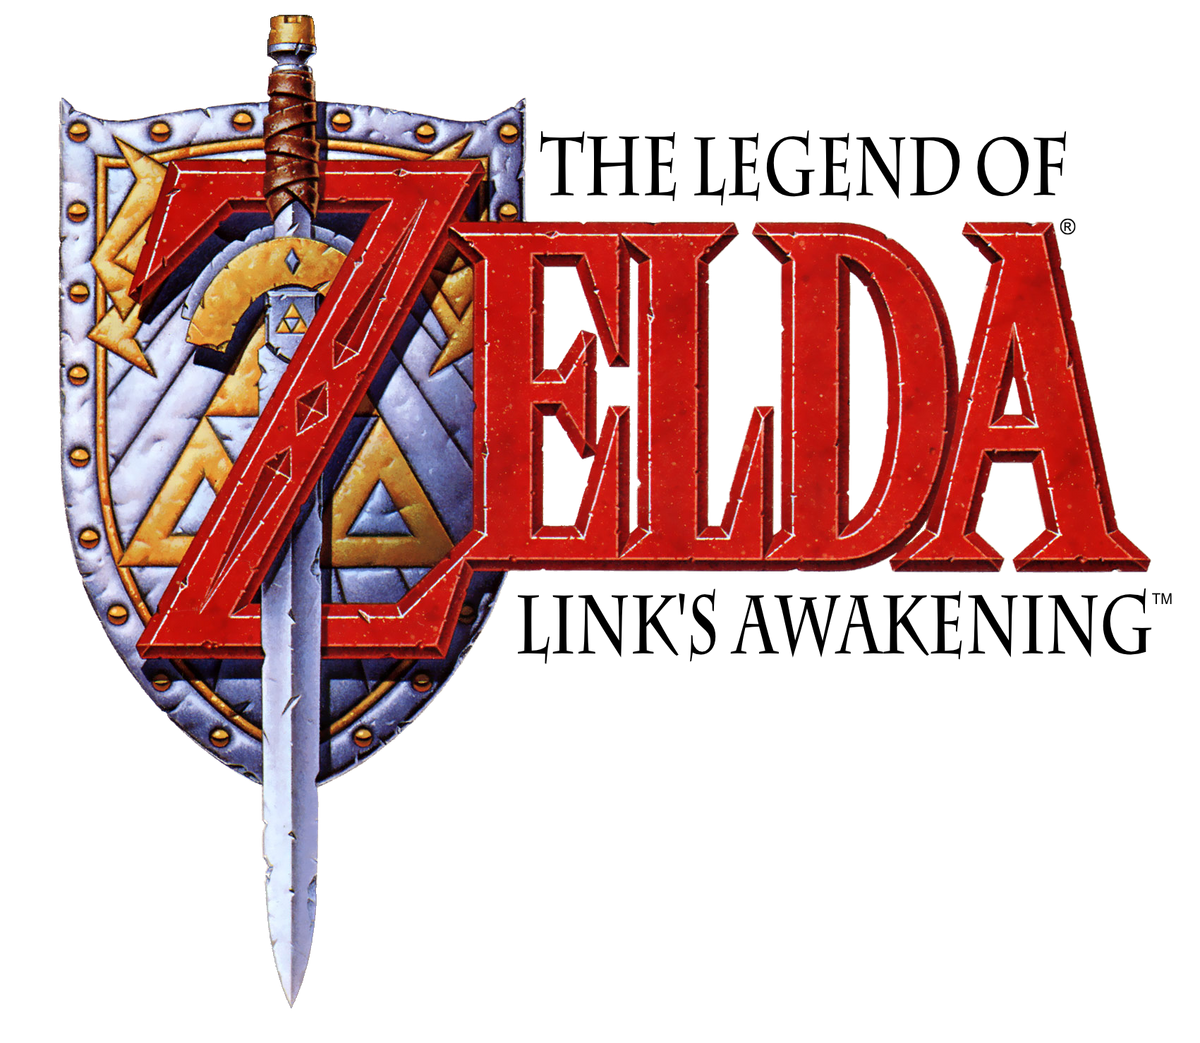 The Legend Of Zelda Link Past Legendado em Português Game Boy